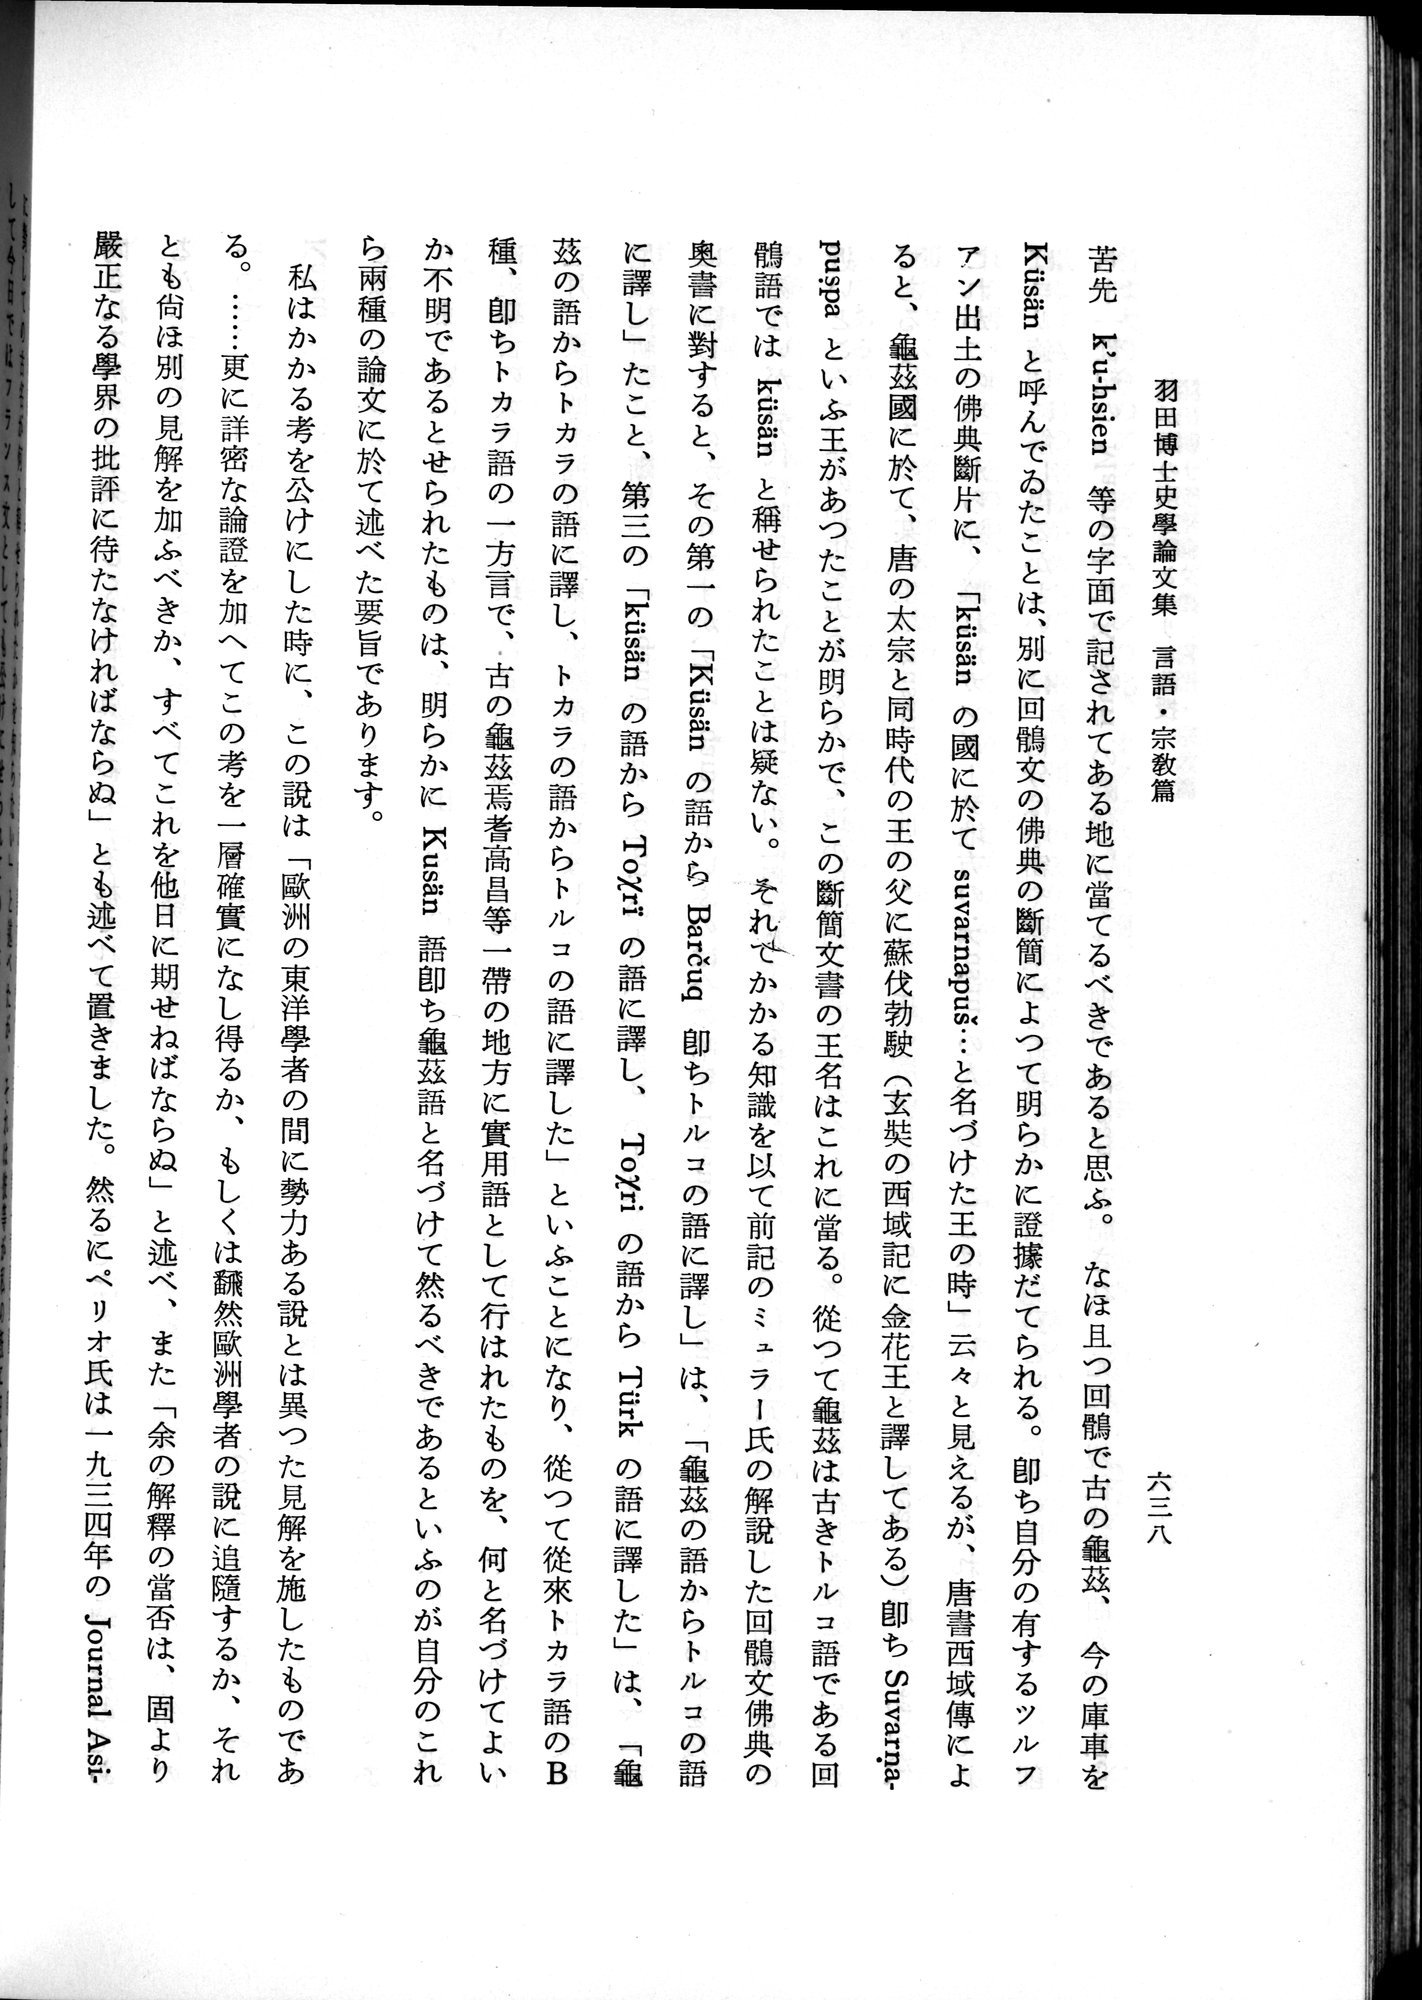 羽田博士史学論文集 : vol.2 / Page 702 (Grayscale High Resolution Image)